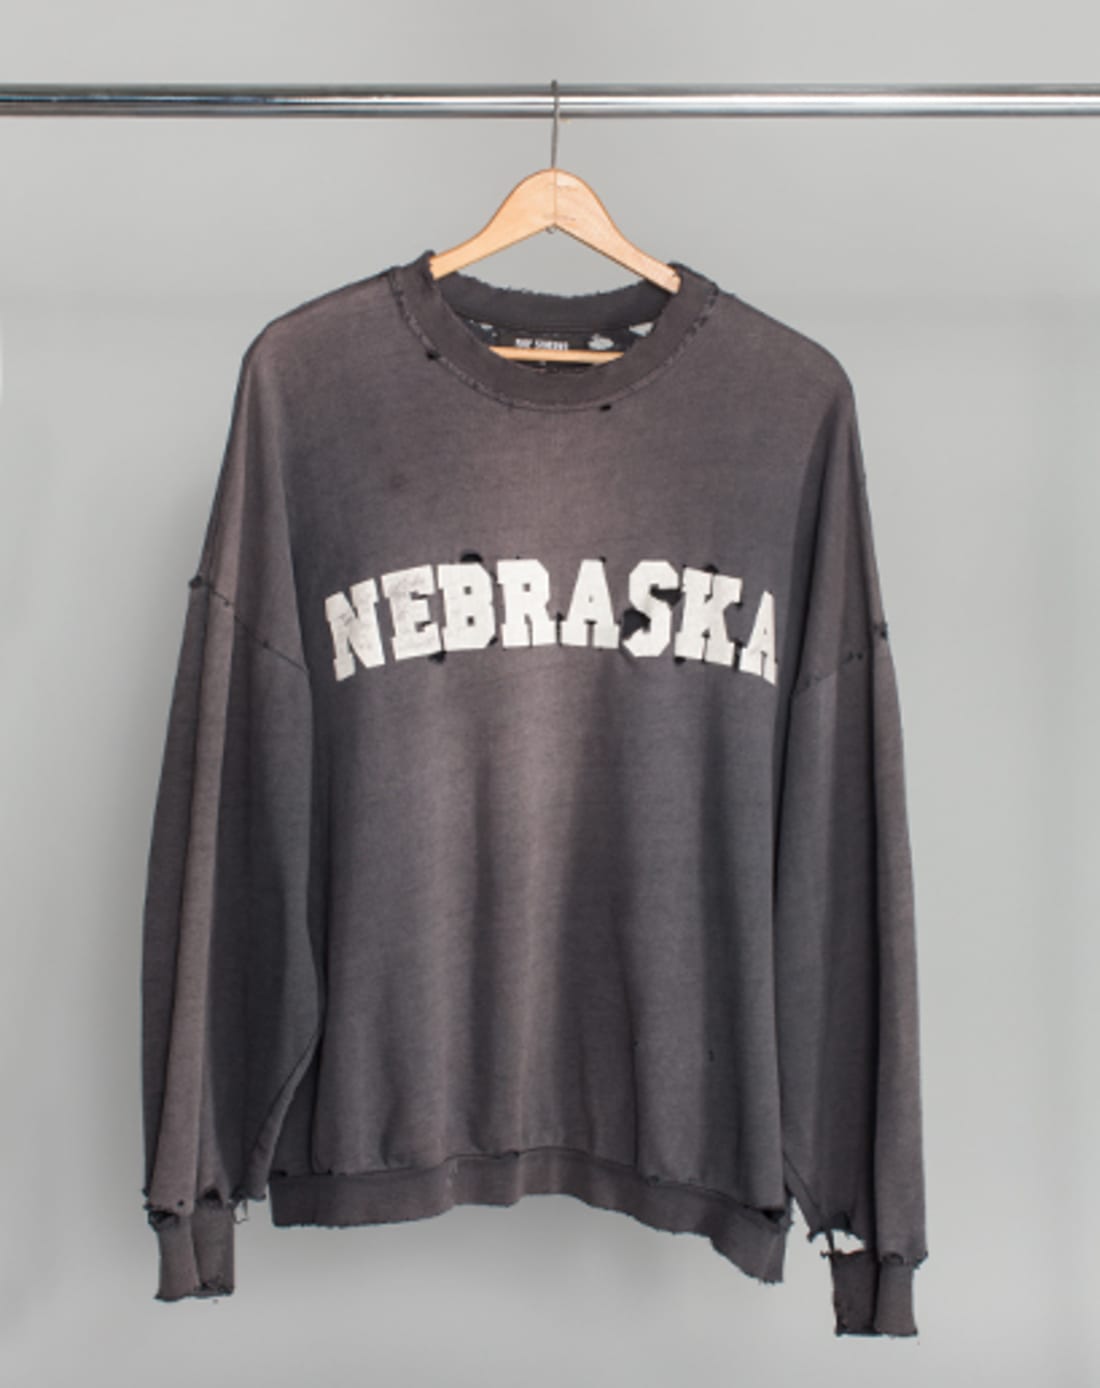 Any Reps Of This Raf Simons Nebraska Sweater? : FashionReps